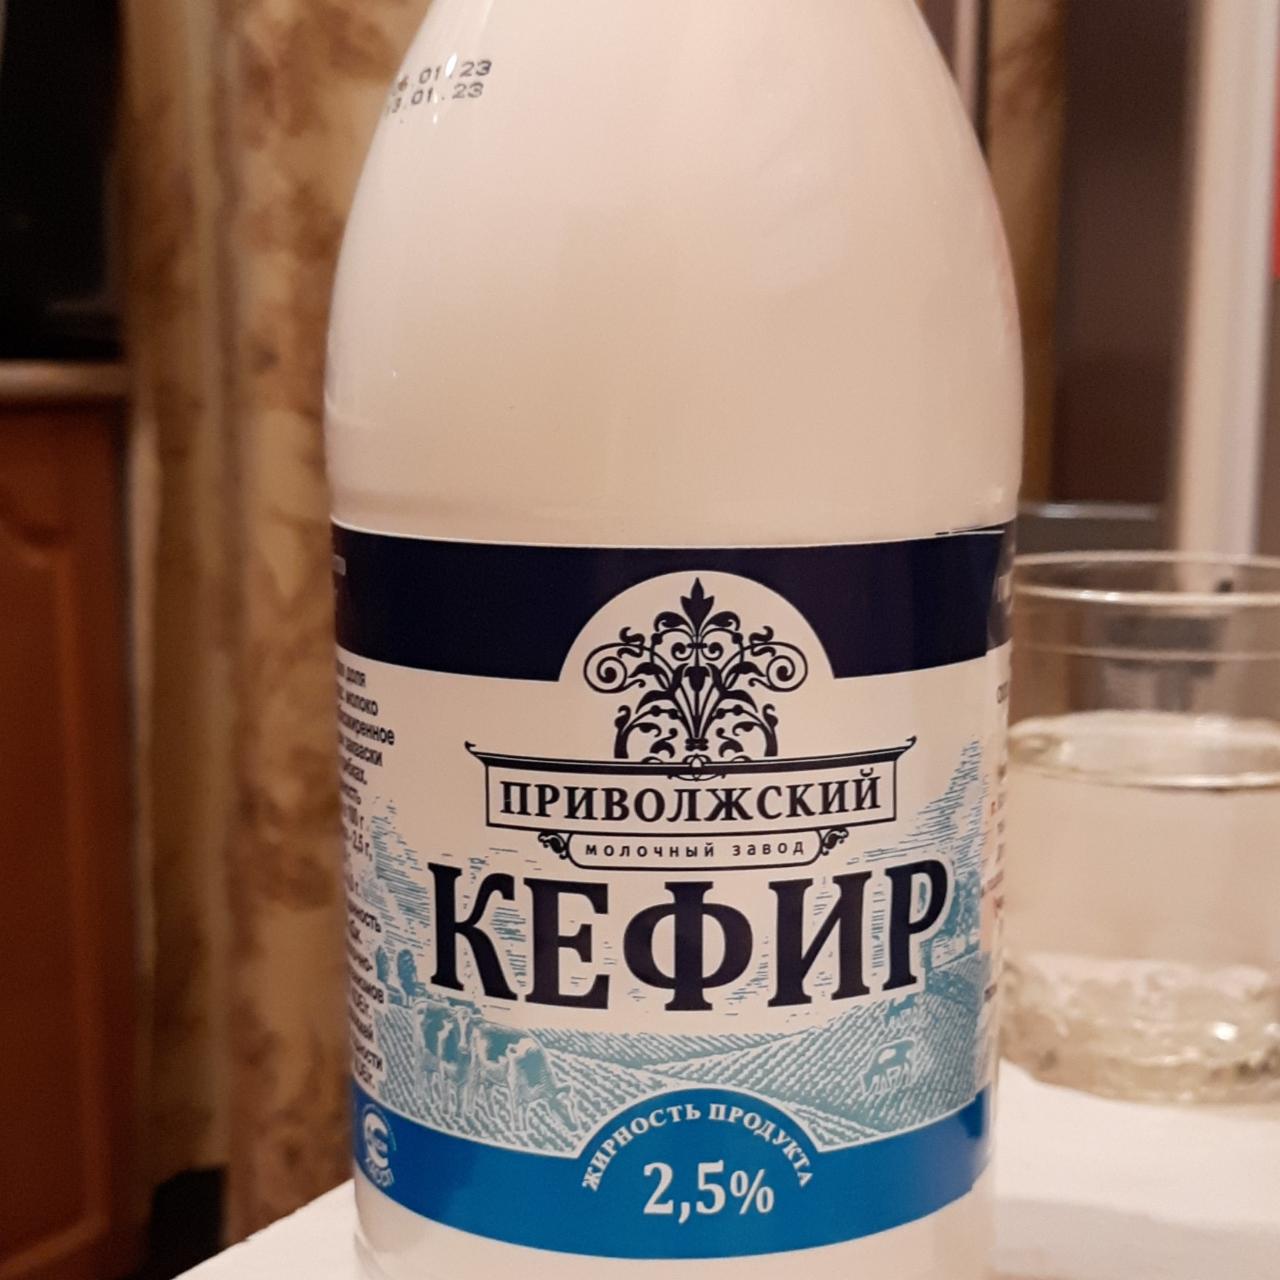 Фото - Кефир 2,5% Приволжский молочный завод